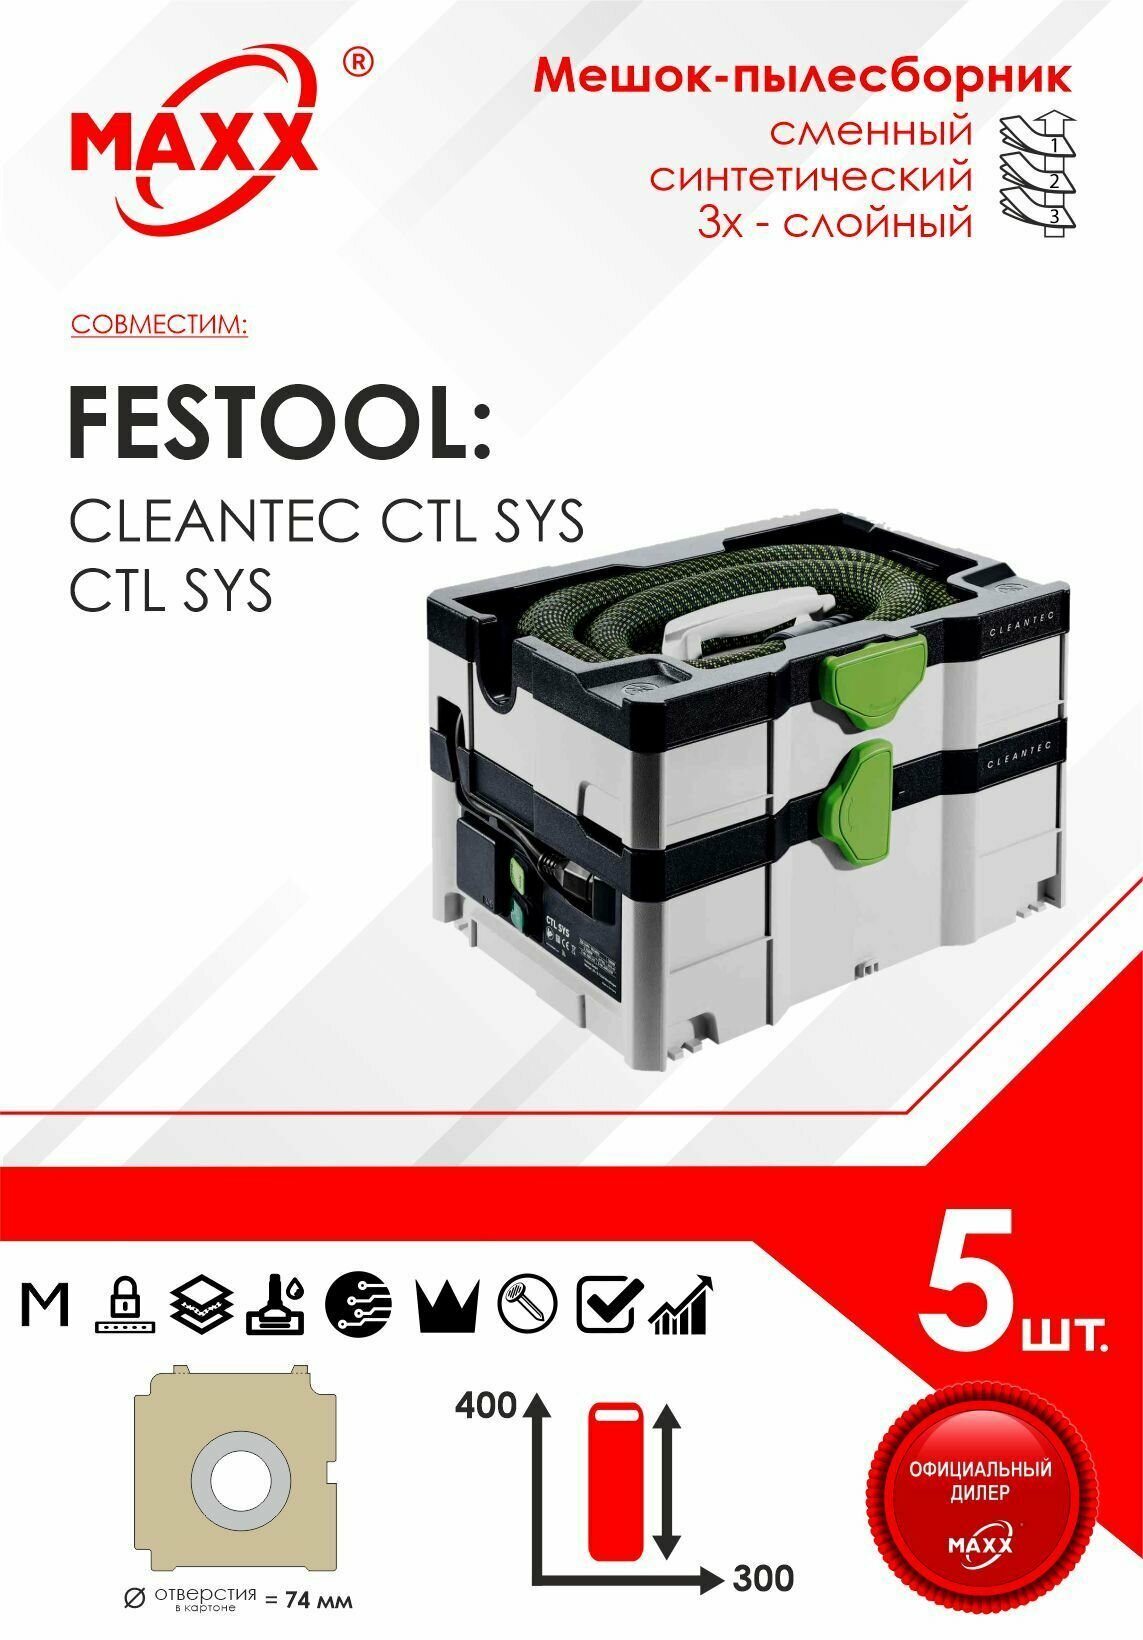 Мешки сменные 5 шт. для пылесоса Festool CTL SYS Festool CLEANTEC CTL SYS 575279